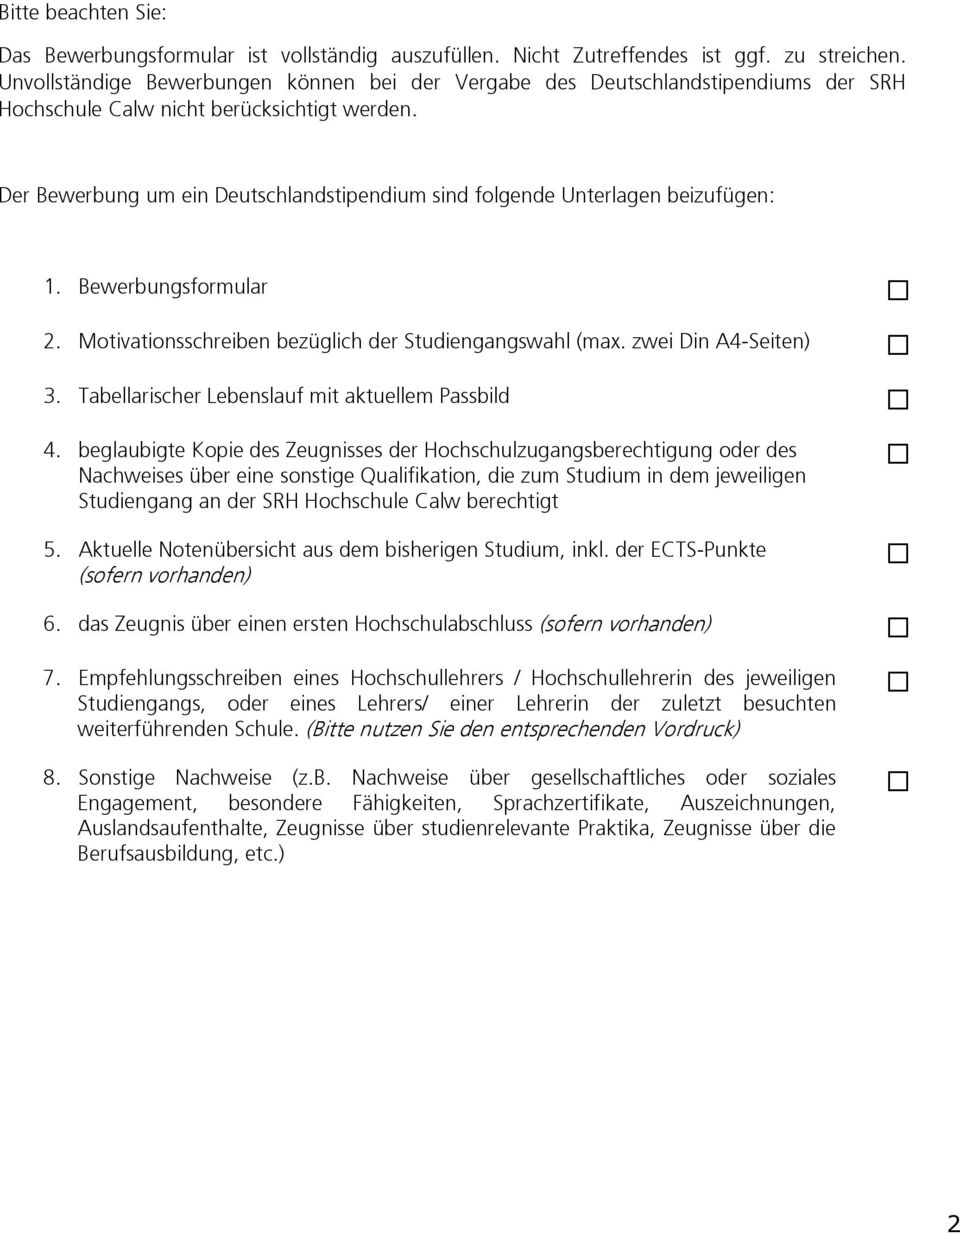 Der Bewerbung um ein Deutschlandstipendium sind folgende Unterlagen beizufügen: 1. Bewerbungsformular 2. Motivationsschreiben bezüglich der Studiengangswahl (max. zwei Din A4-Seiten) 3.